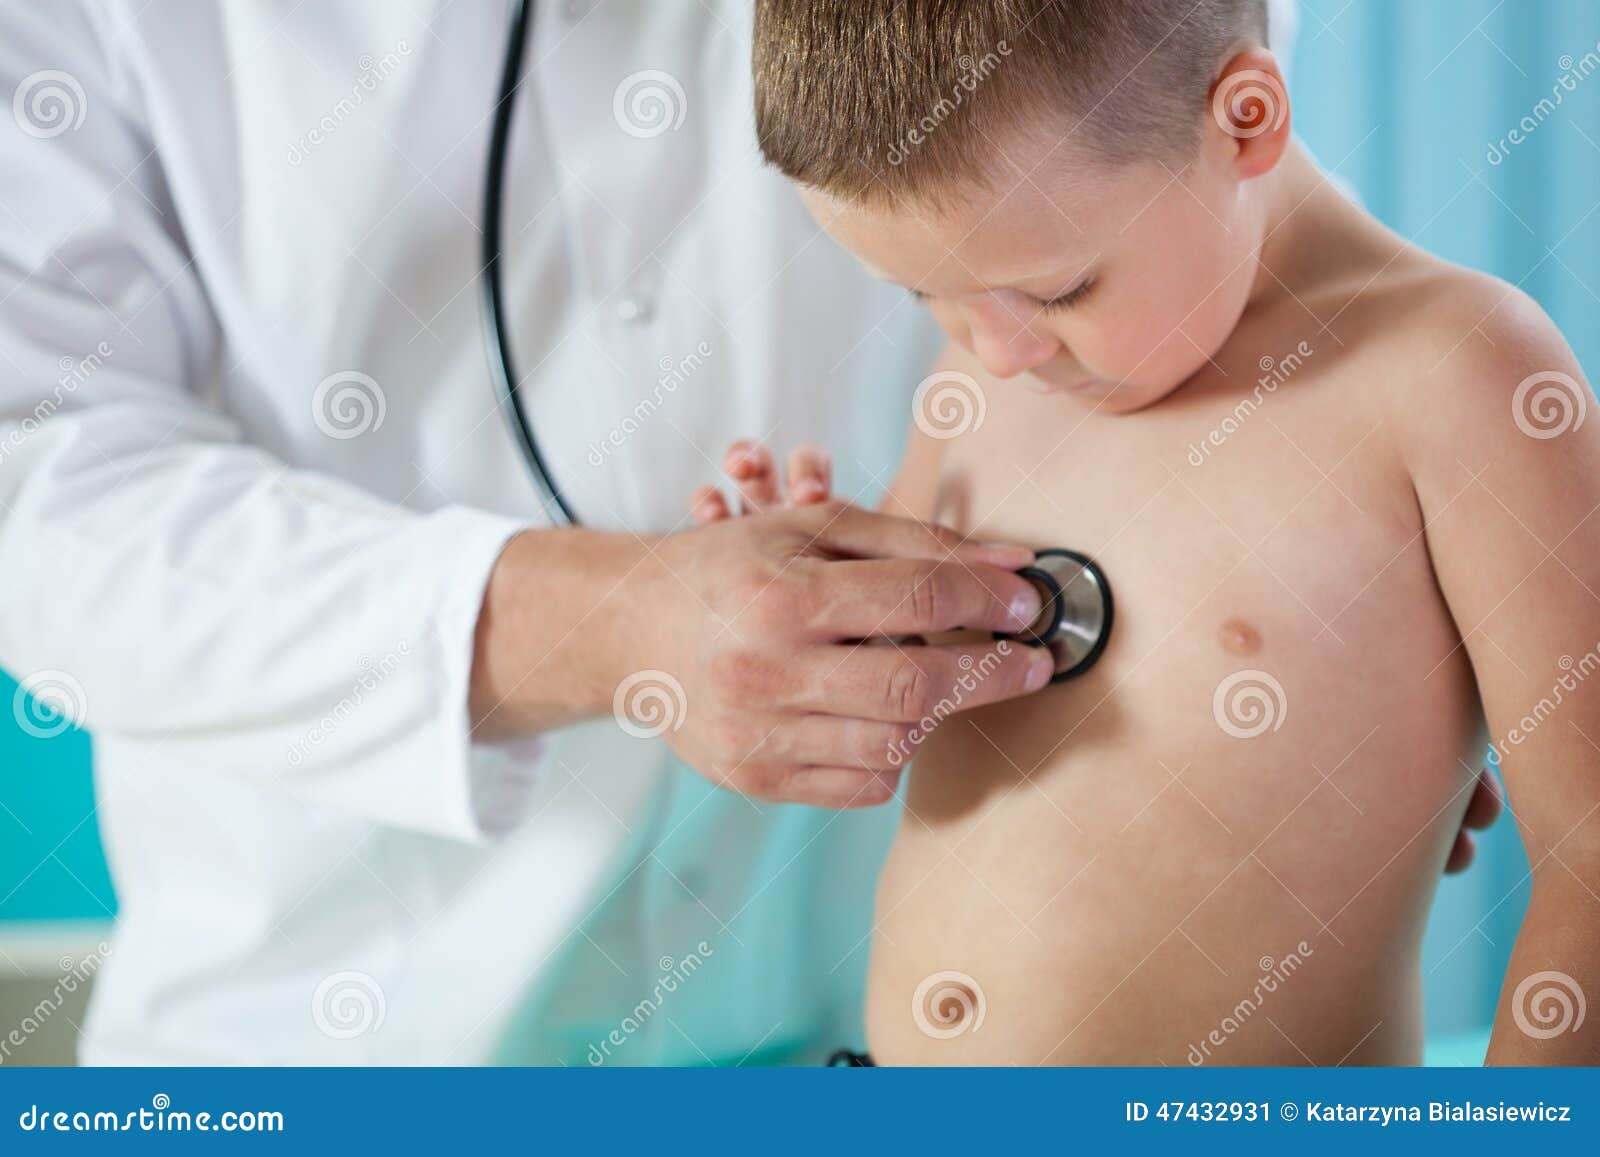 child chest auscultation